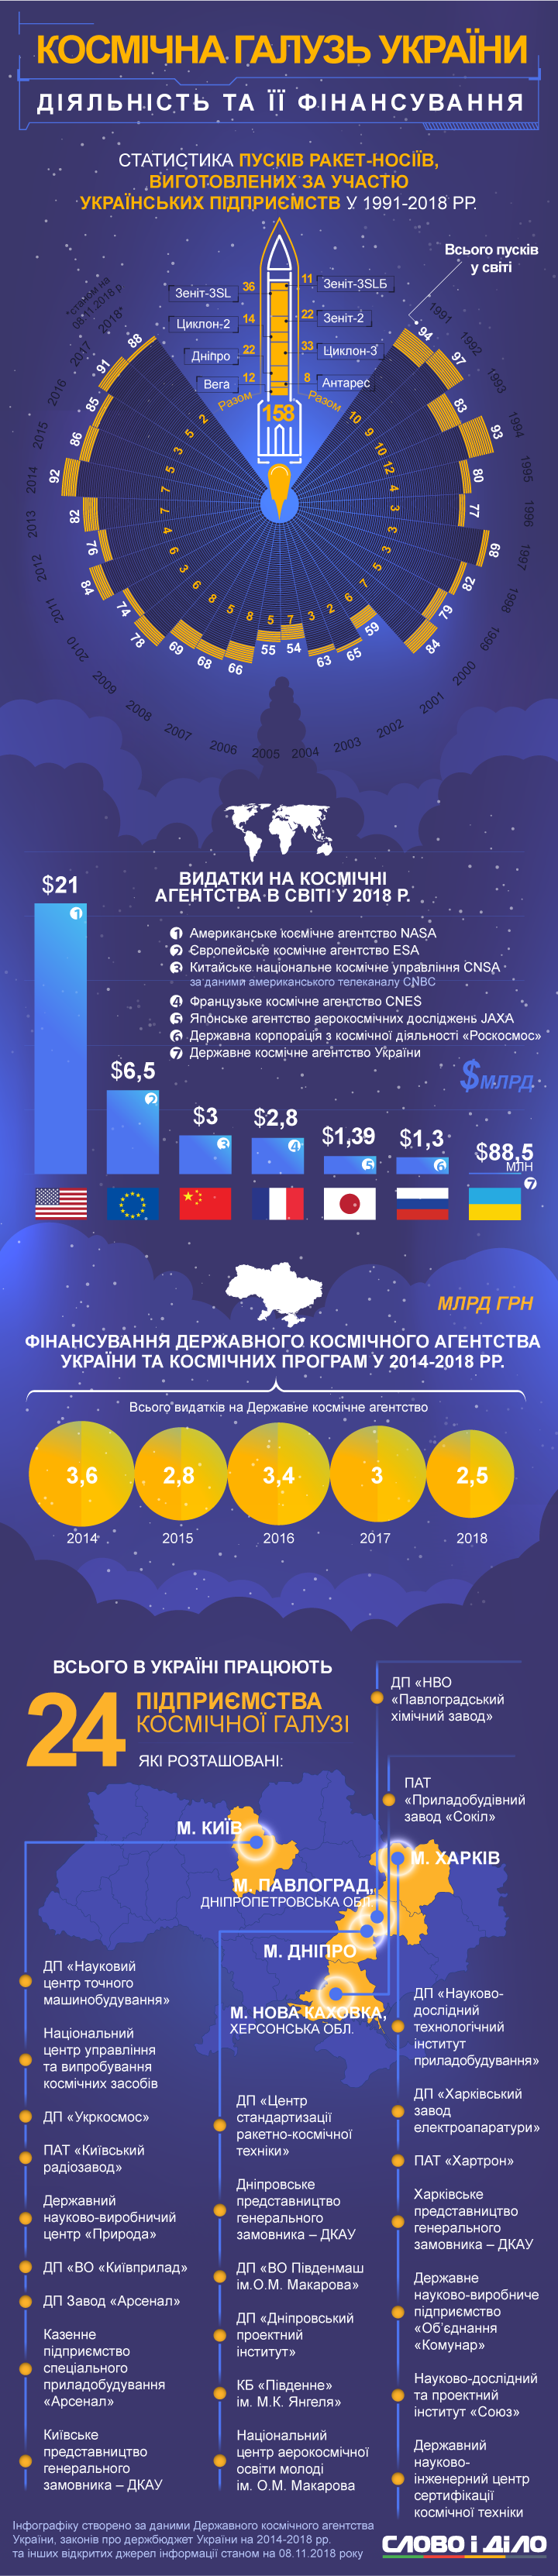 На розвиток космічної галузі в Україні виділили 88 мільйонів доларів. При тому, що експорт нашої космічної продукції становить 90 відсотків усього експорту країни.